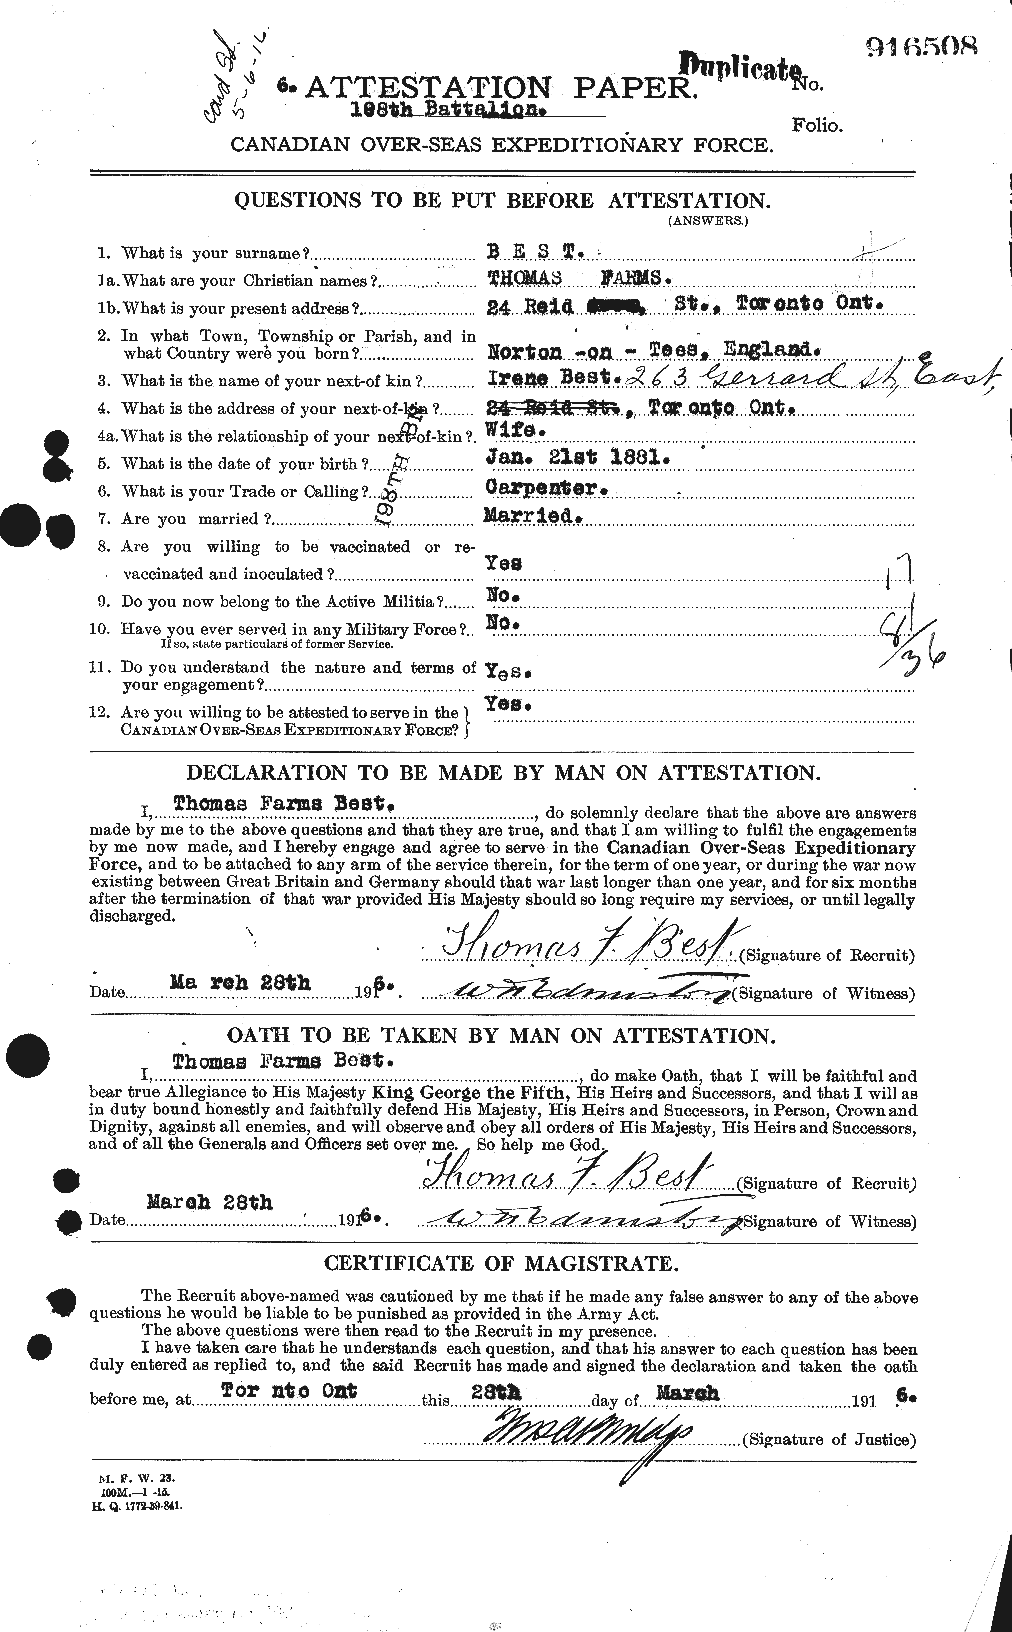 Dossiers du Personnel de la Première Guerre mondiale - CEC 236885a